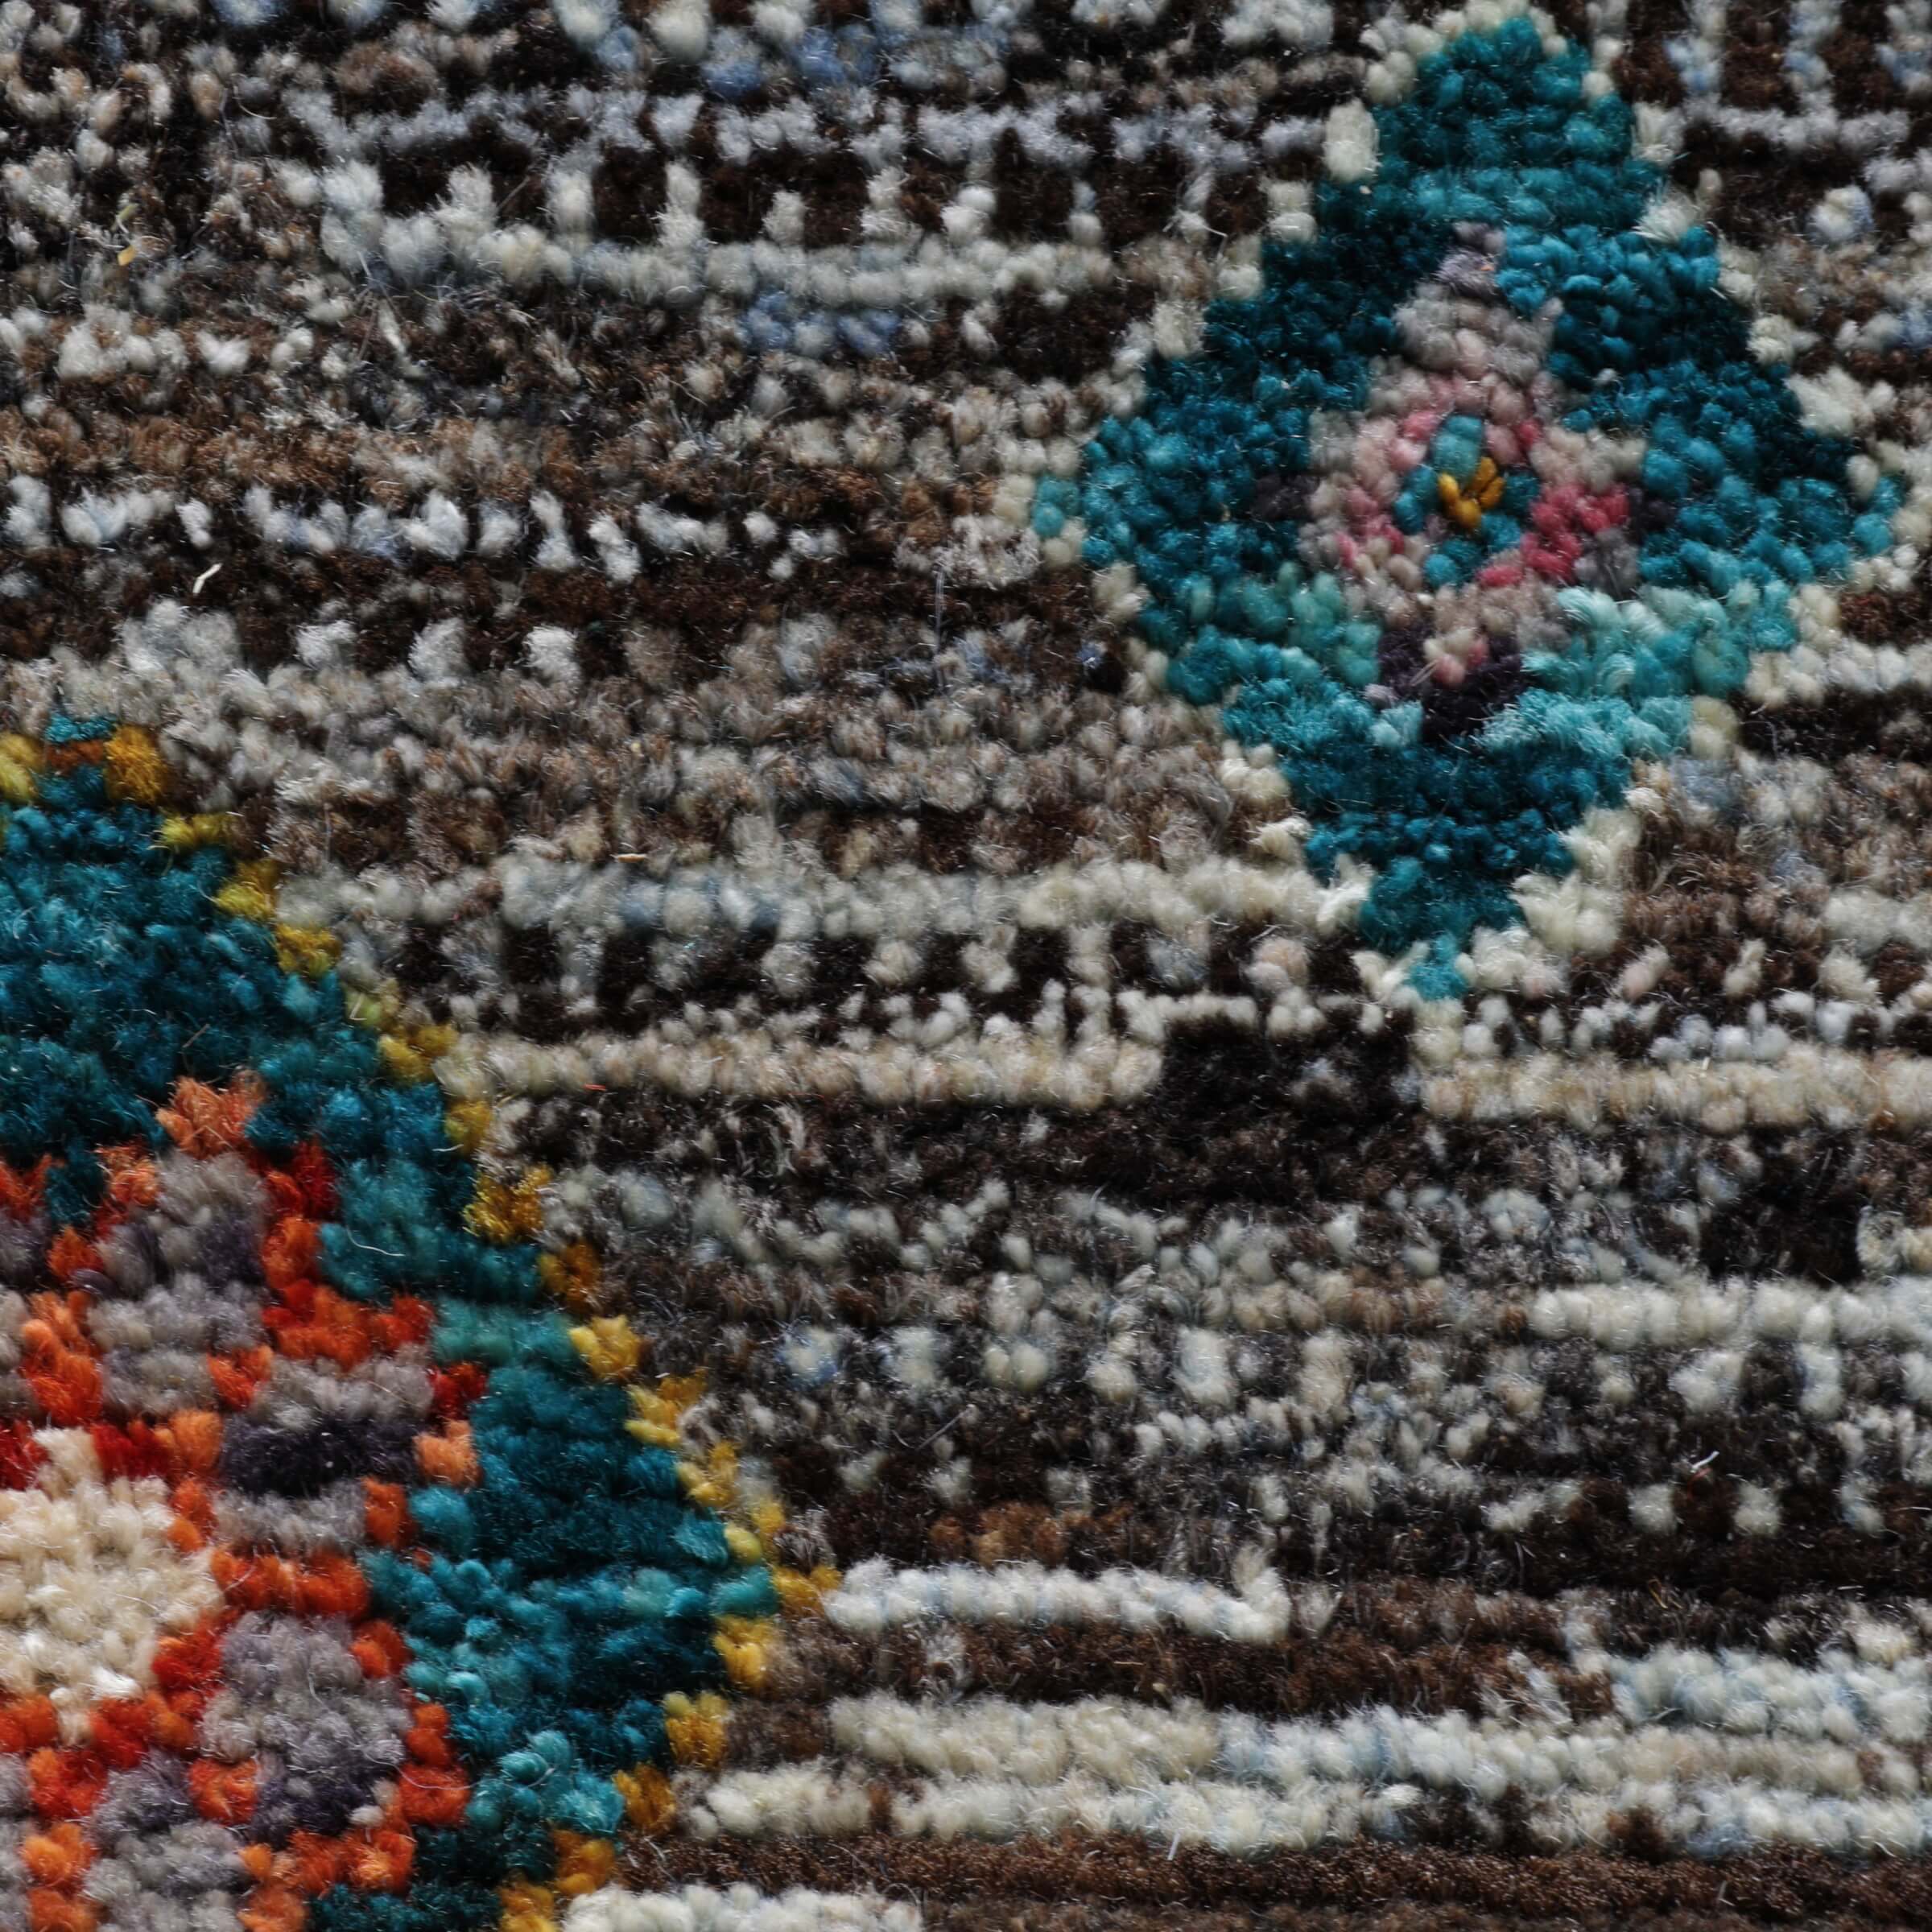 Afghanischer Teppich aus Gazniwolle mit buntem marokkanischem Design von Hand geknüpft, Detailansicht